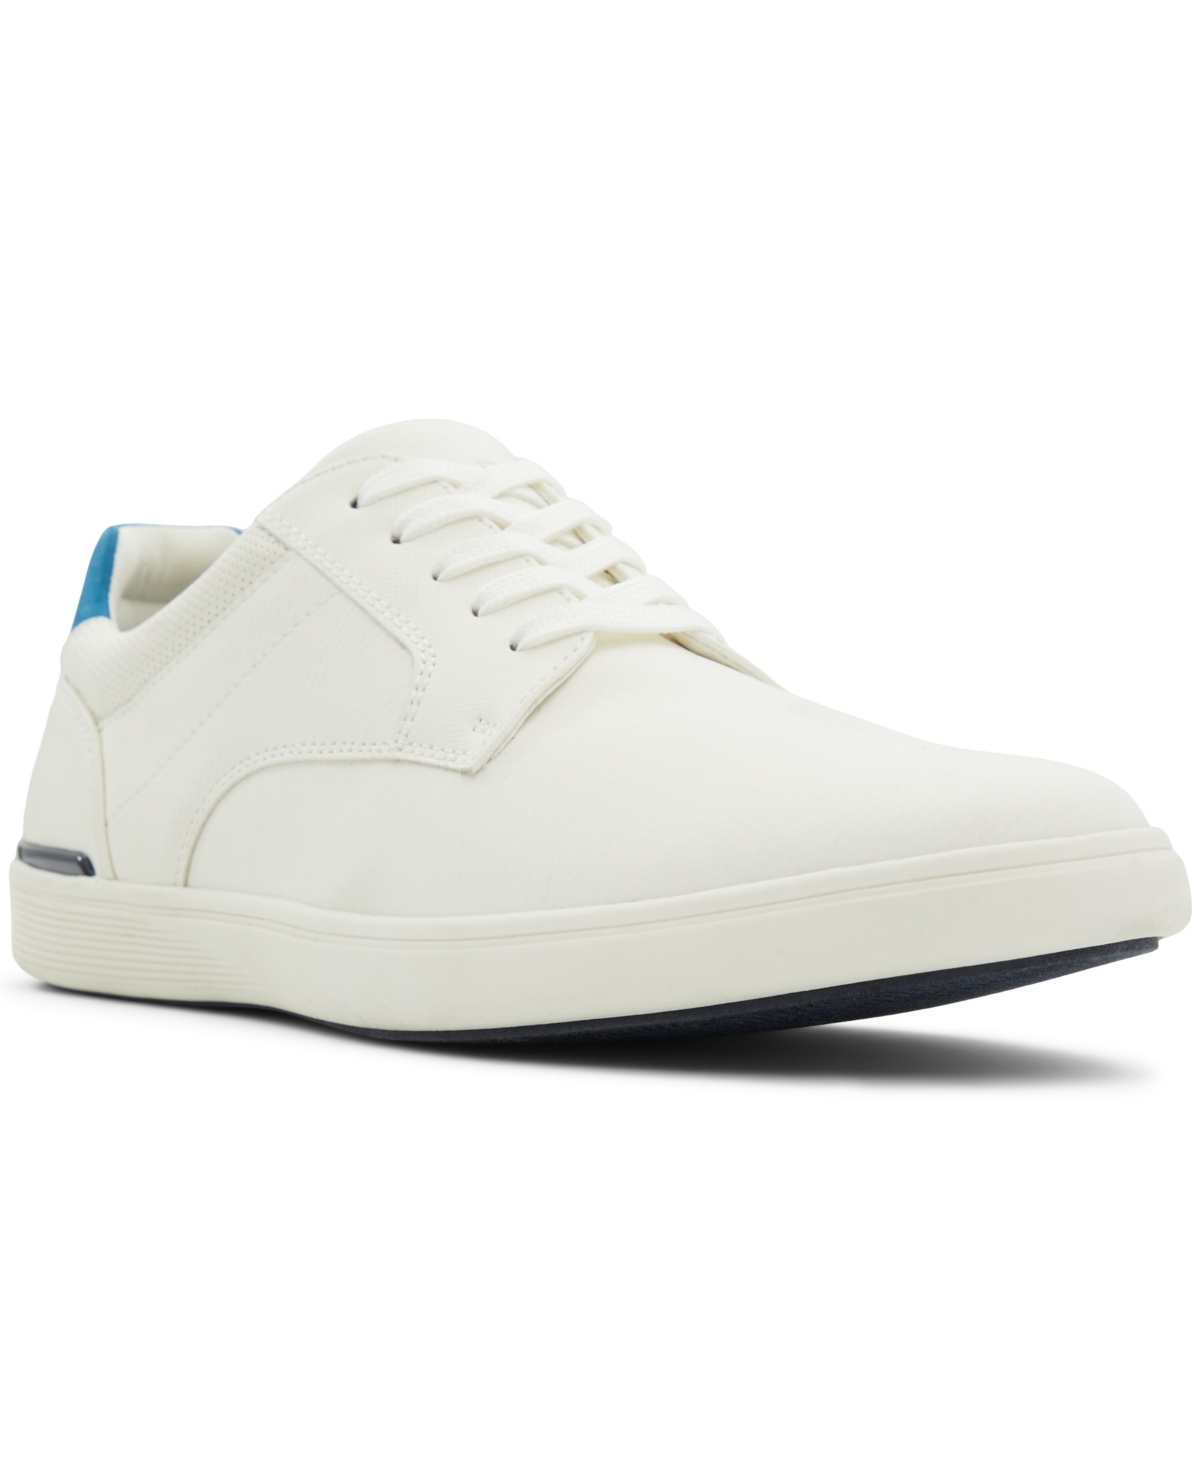 Men's Randolph Lace-Up Shoes - White